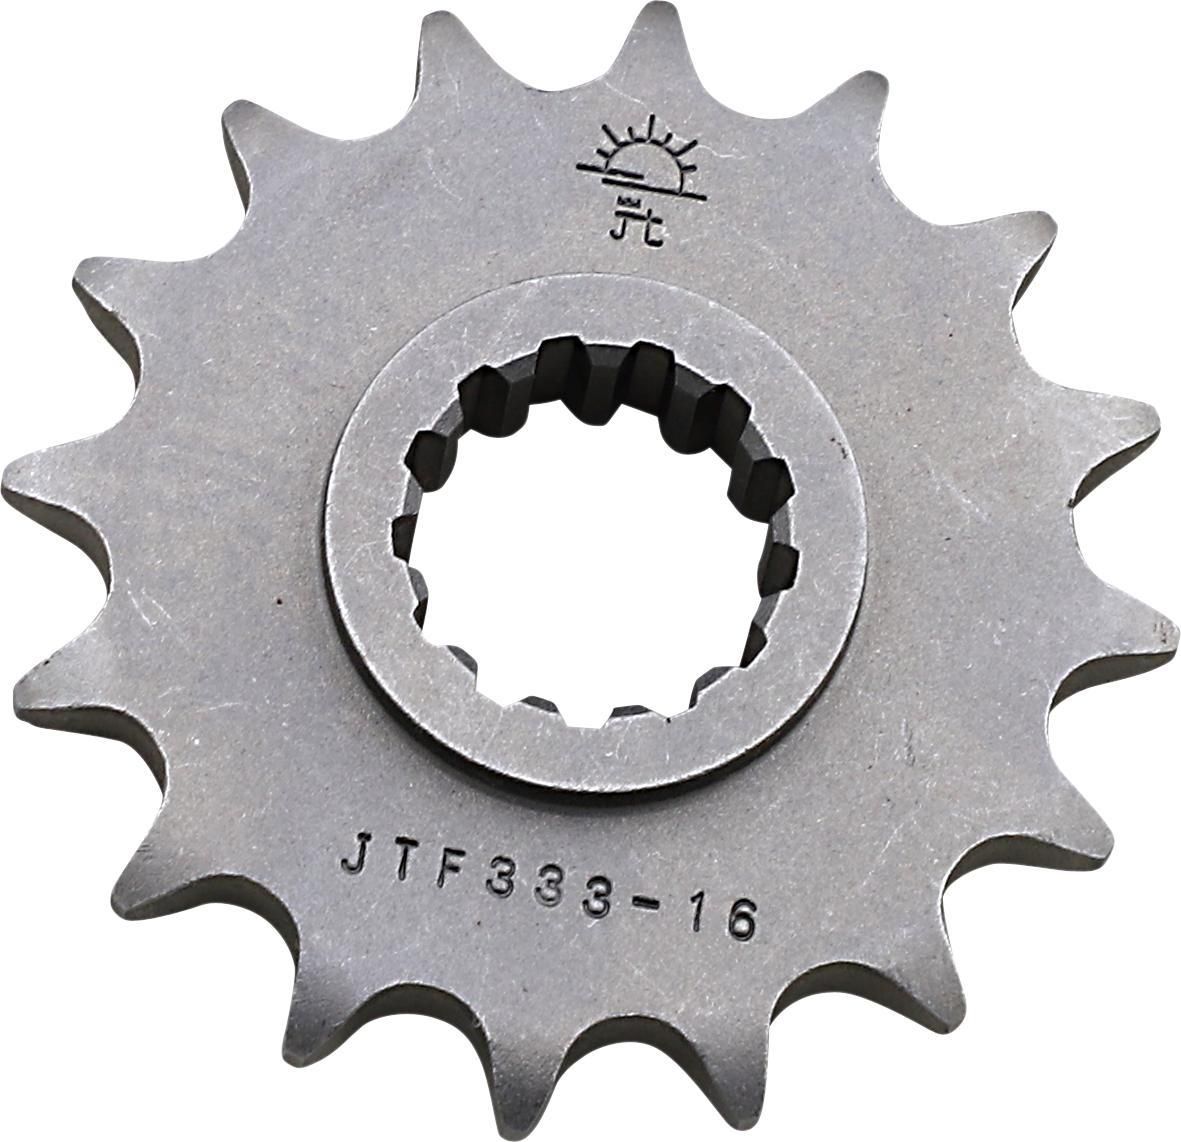 3EFR-JT-SPROCKET-JTF333-16 Counter Shaft Sprocket - 16-Tooth